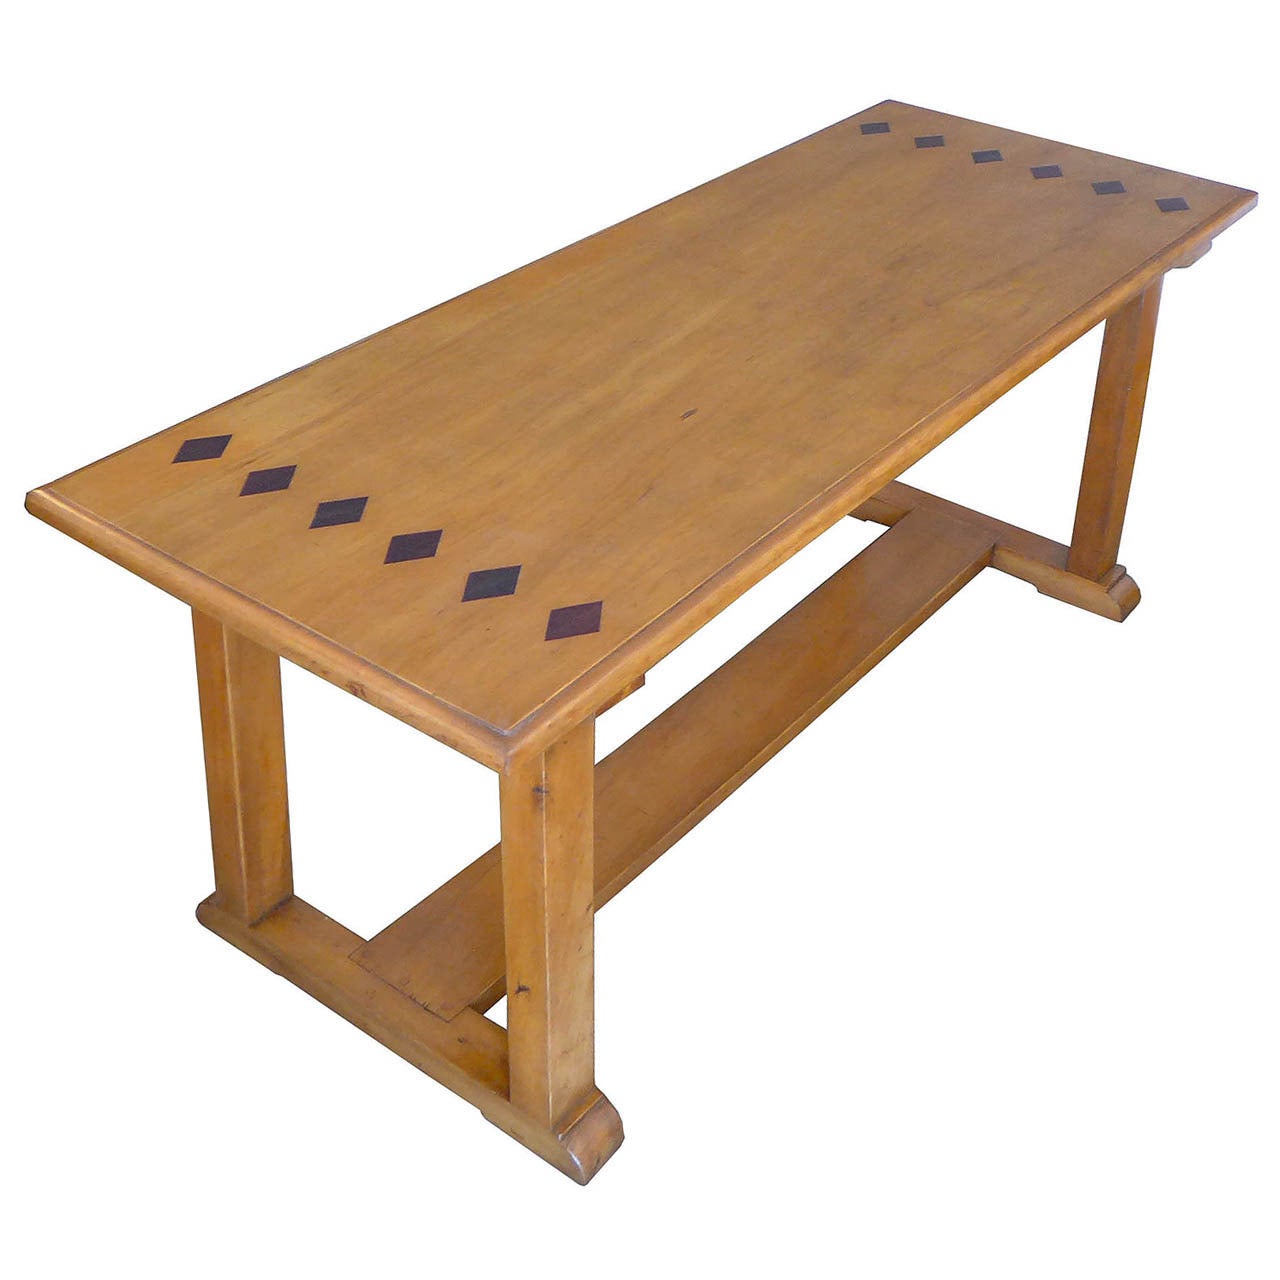  Rare Original Handmade Table by William Spratling For Sale